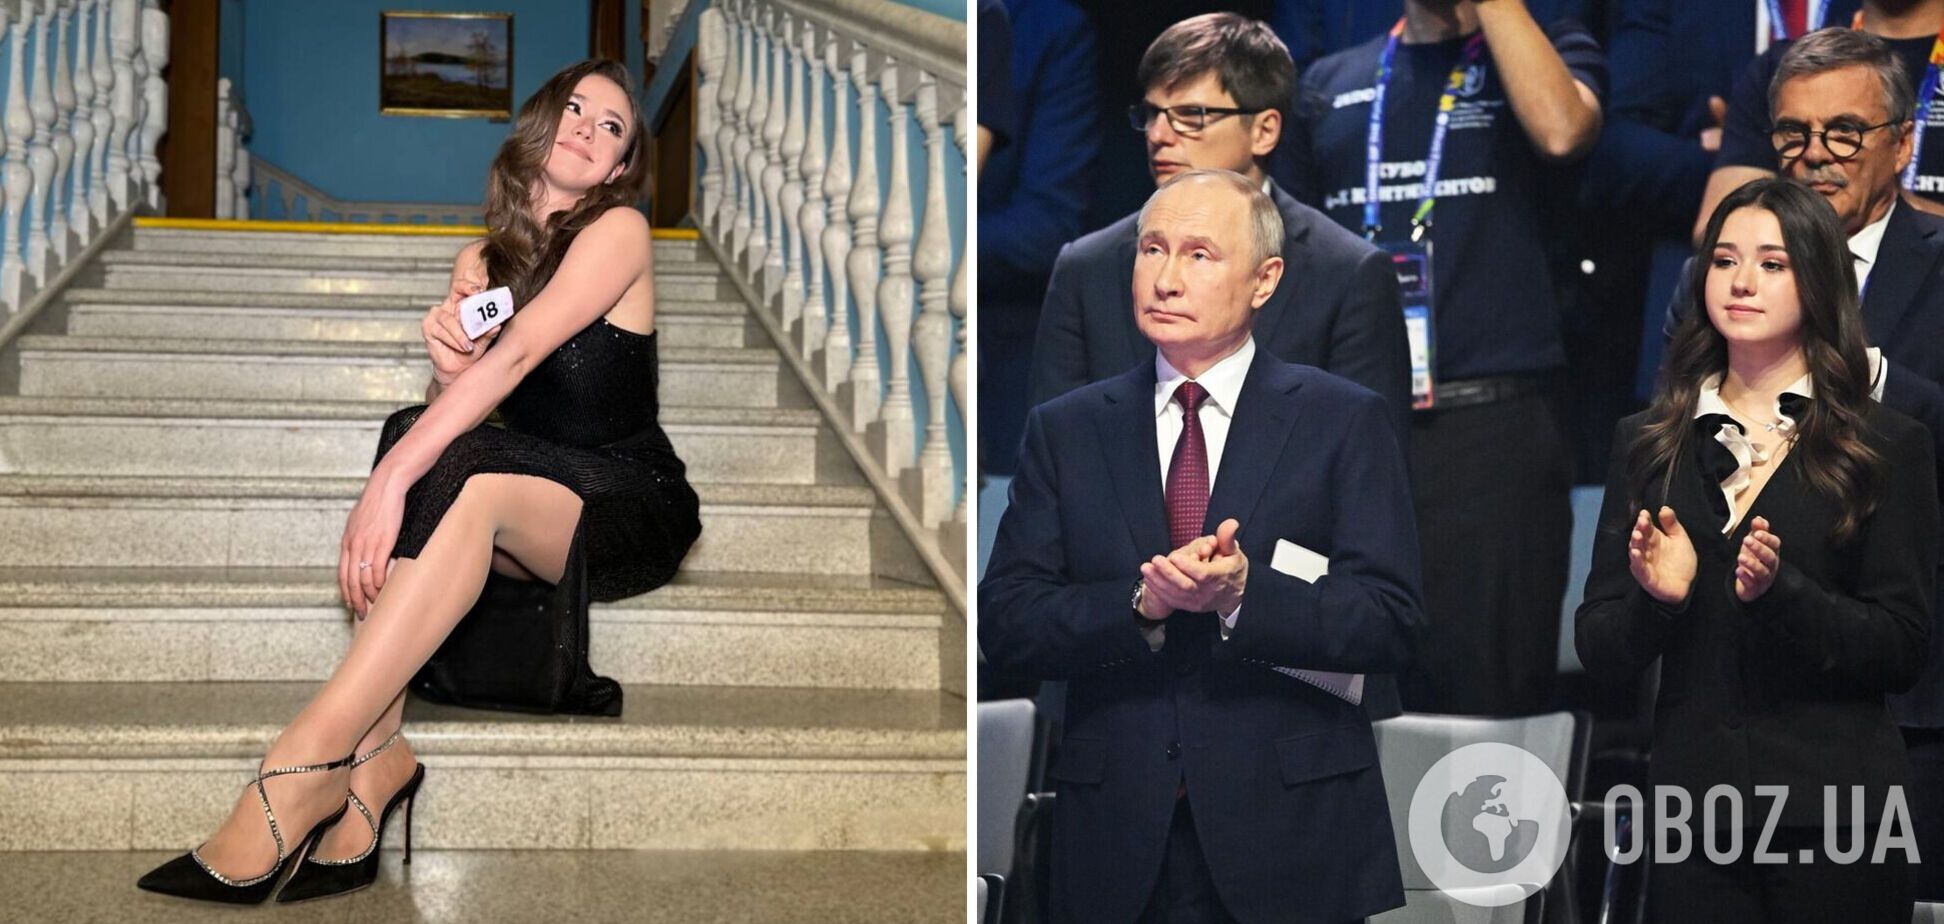 'Любит Путин молодых': 17-летняя российская фигуристка прогнулась перед главой РФ и стала посмешищем в сети